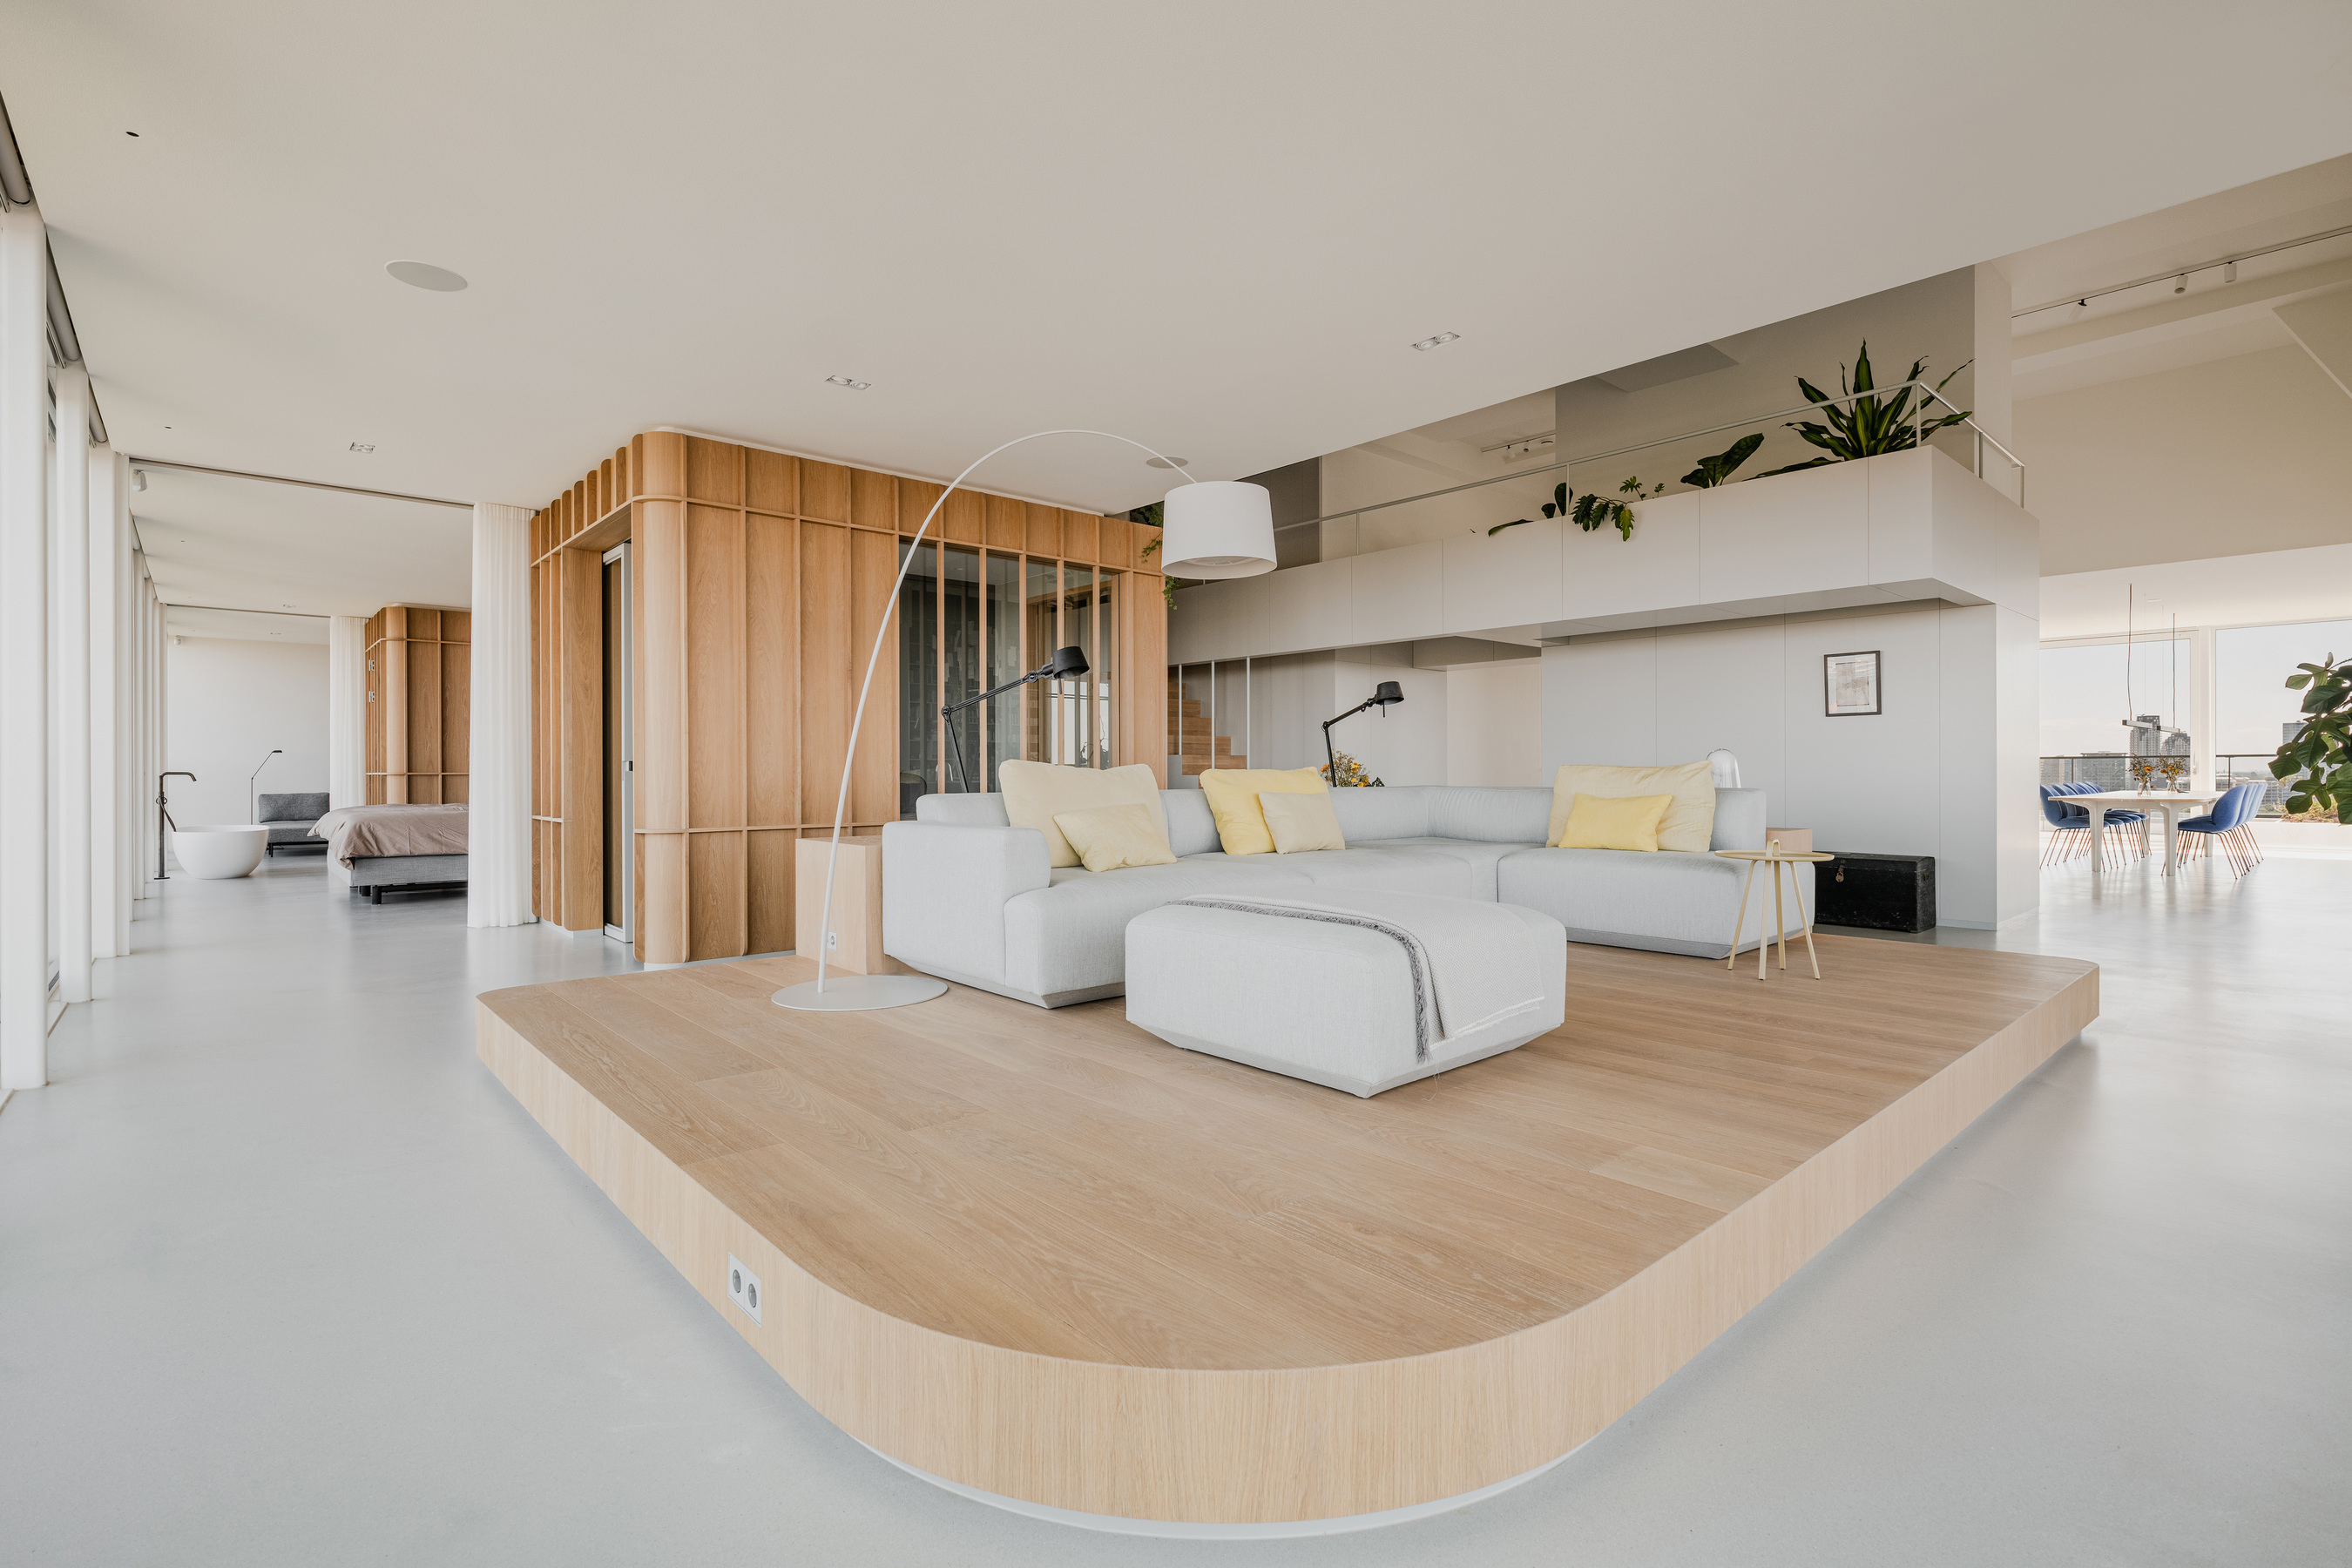 以木地板架高方式定义出起居空间，同时保有开阔视感，简单俐落的 L 型沙发造就无与伦比的首席视野座位区。